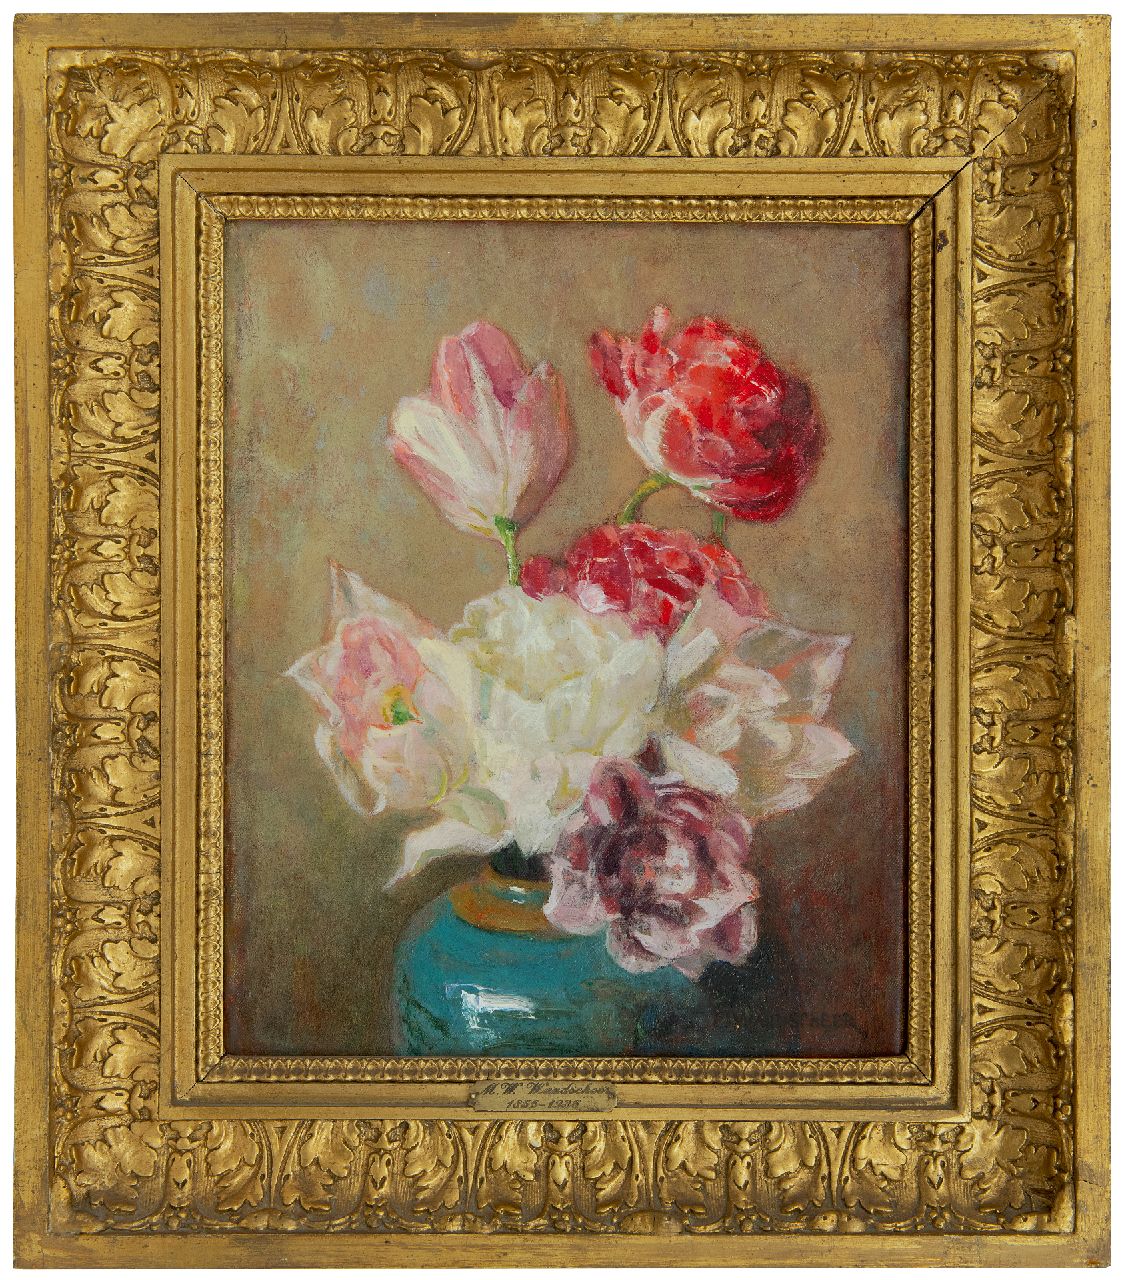 Wandscheer M.W.  | Maria Wilhelmina 'Marie' Wandscheer, Dubbele tulpen in gemberpot, olieverf op doek 30,0 x 23,8 cm, gesigneerd rechtsonder